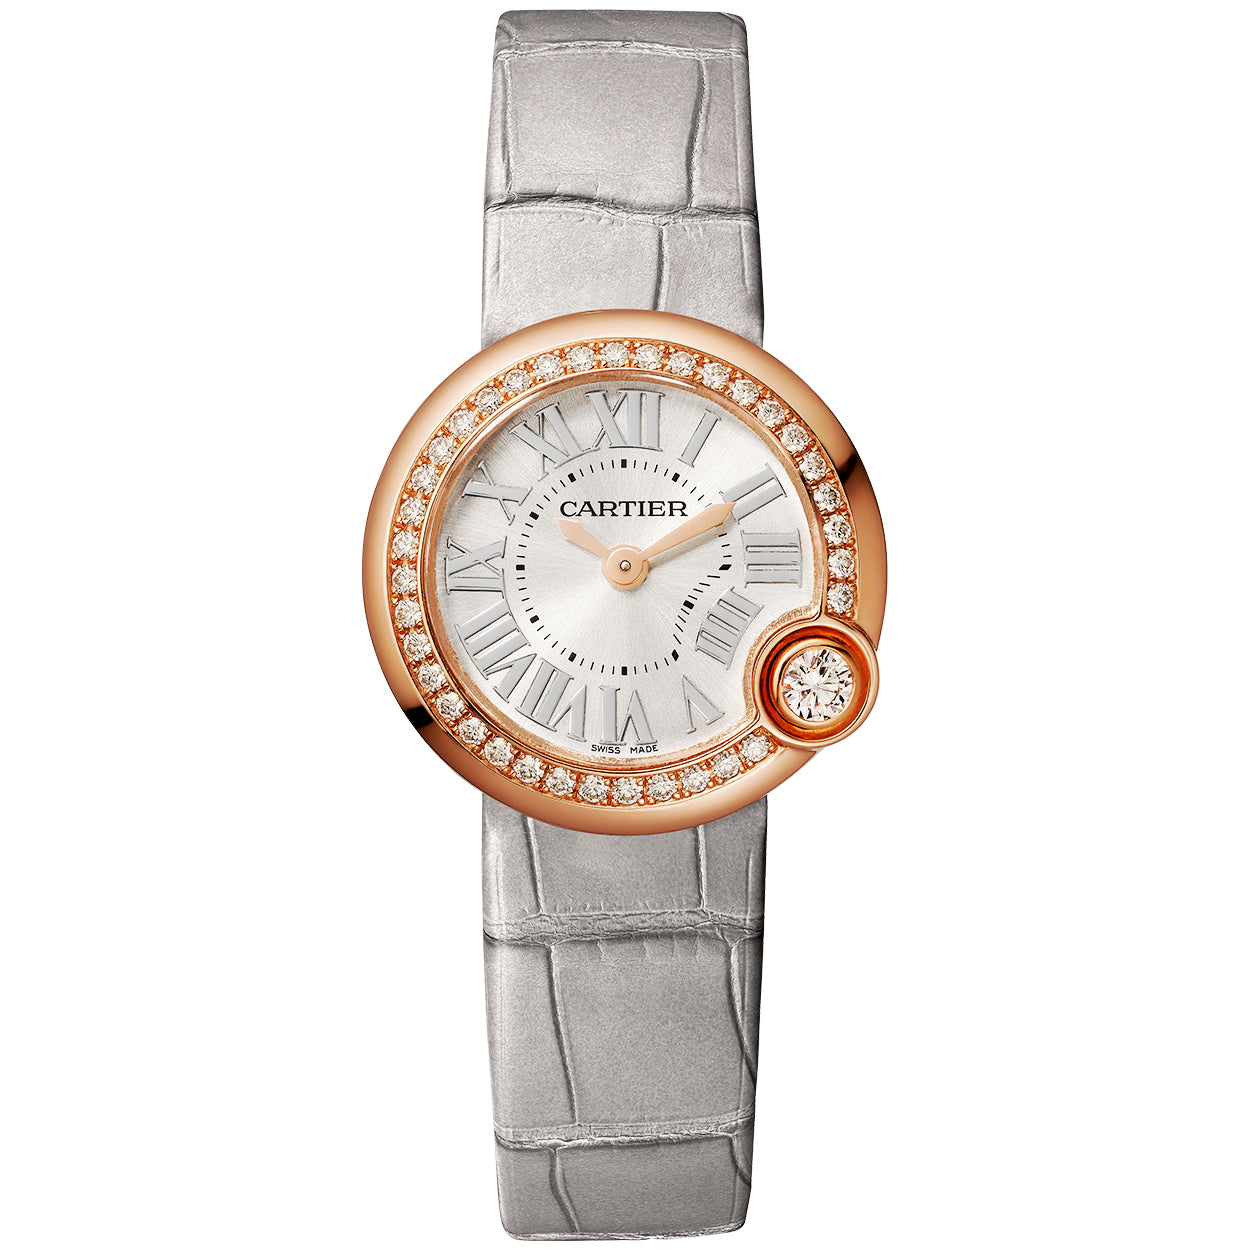 Ballon Blanc de Cartier 26mm 18ct Rose Gold Diamond Set Bezel Watch